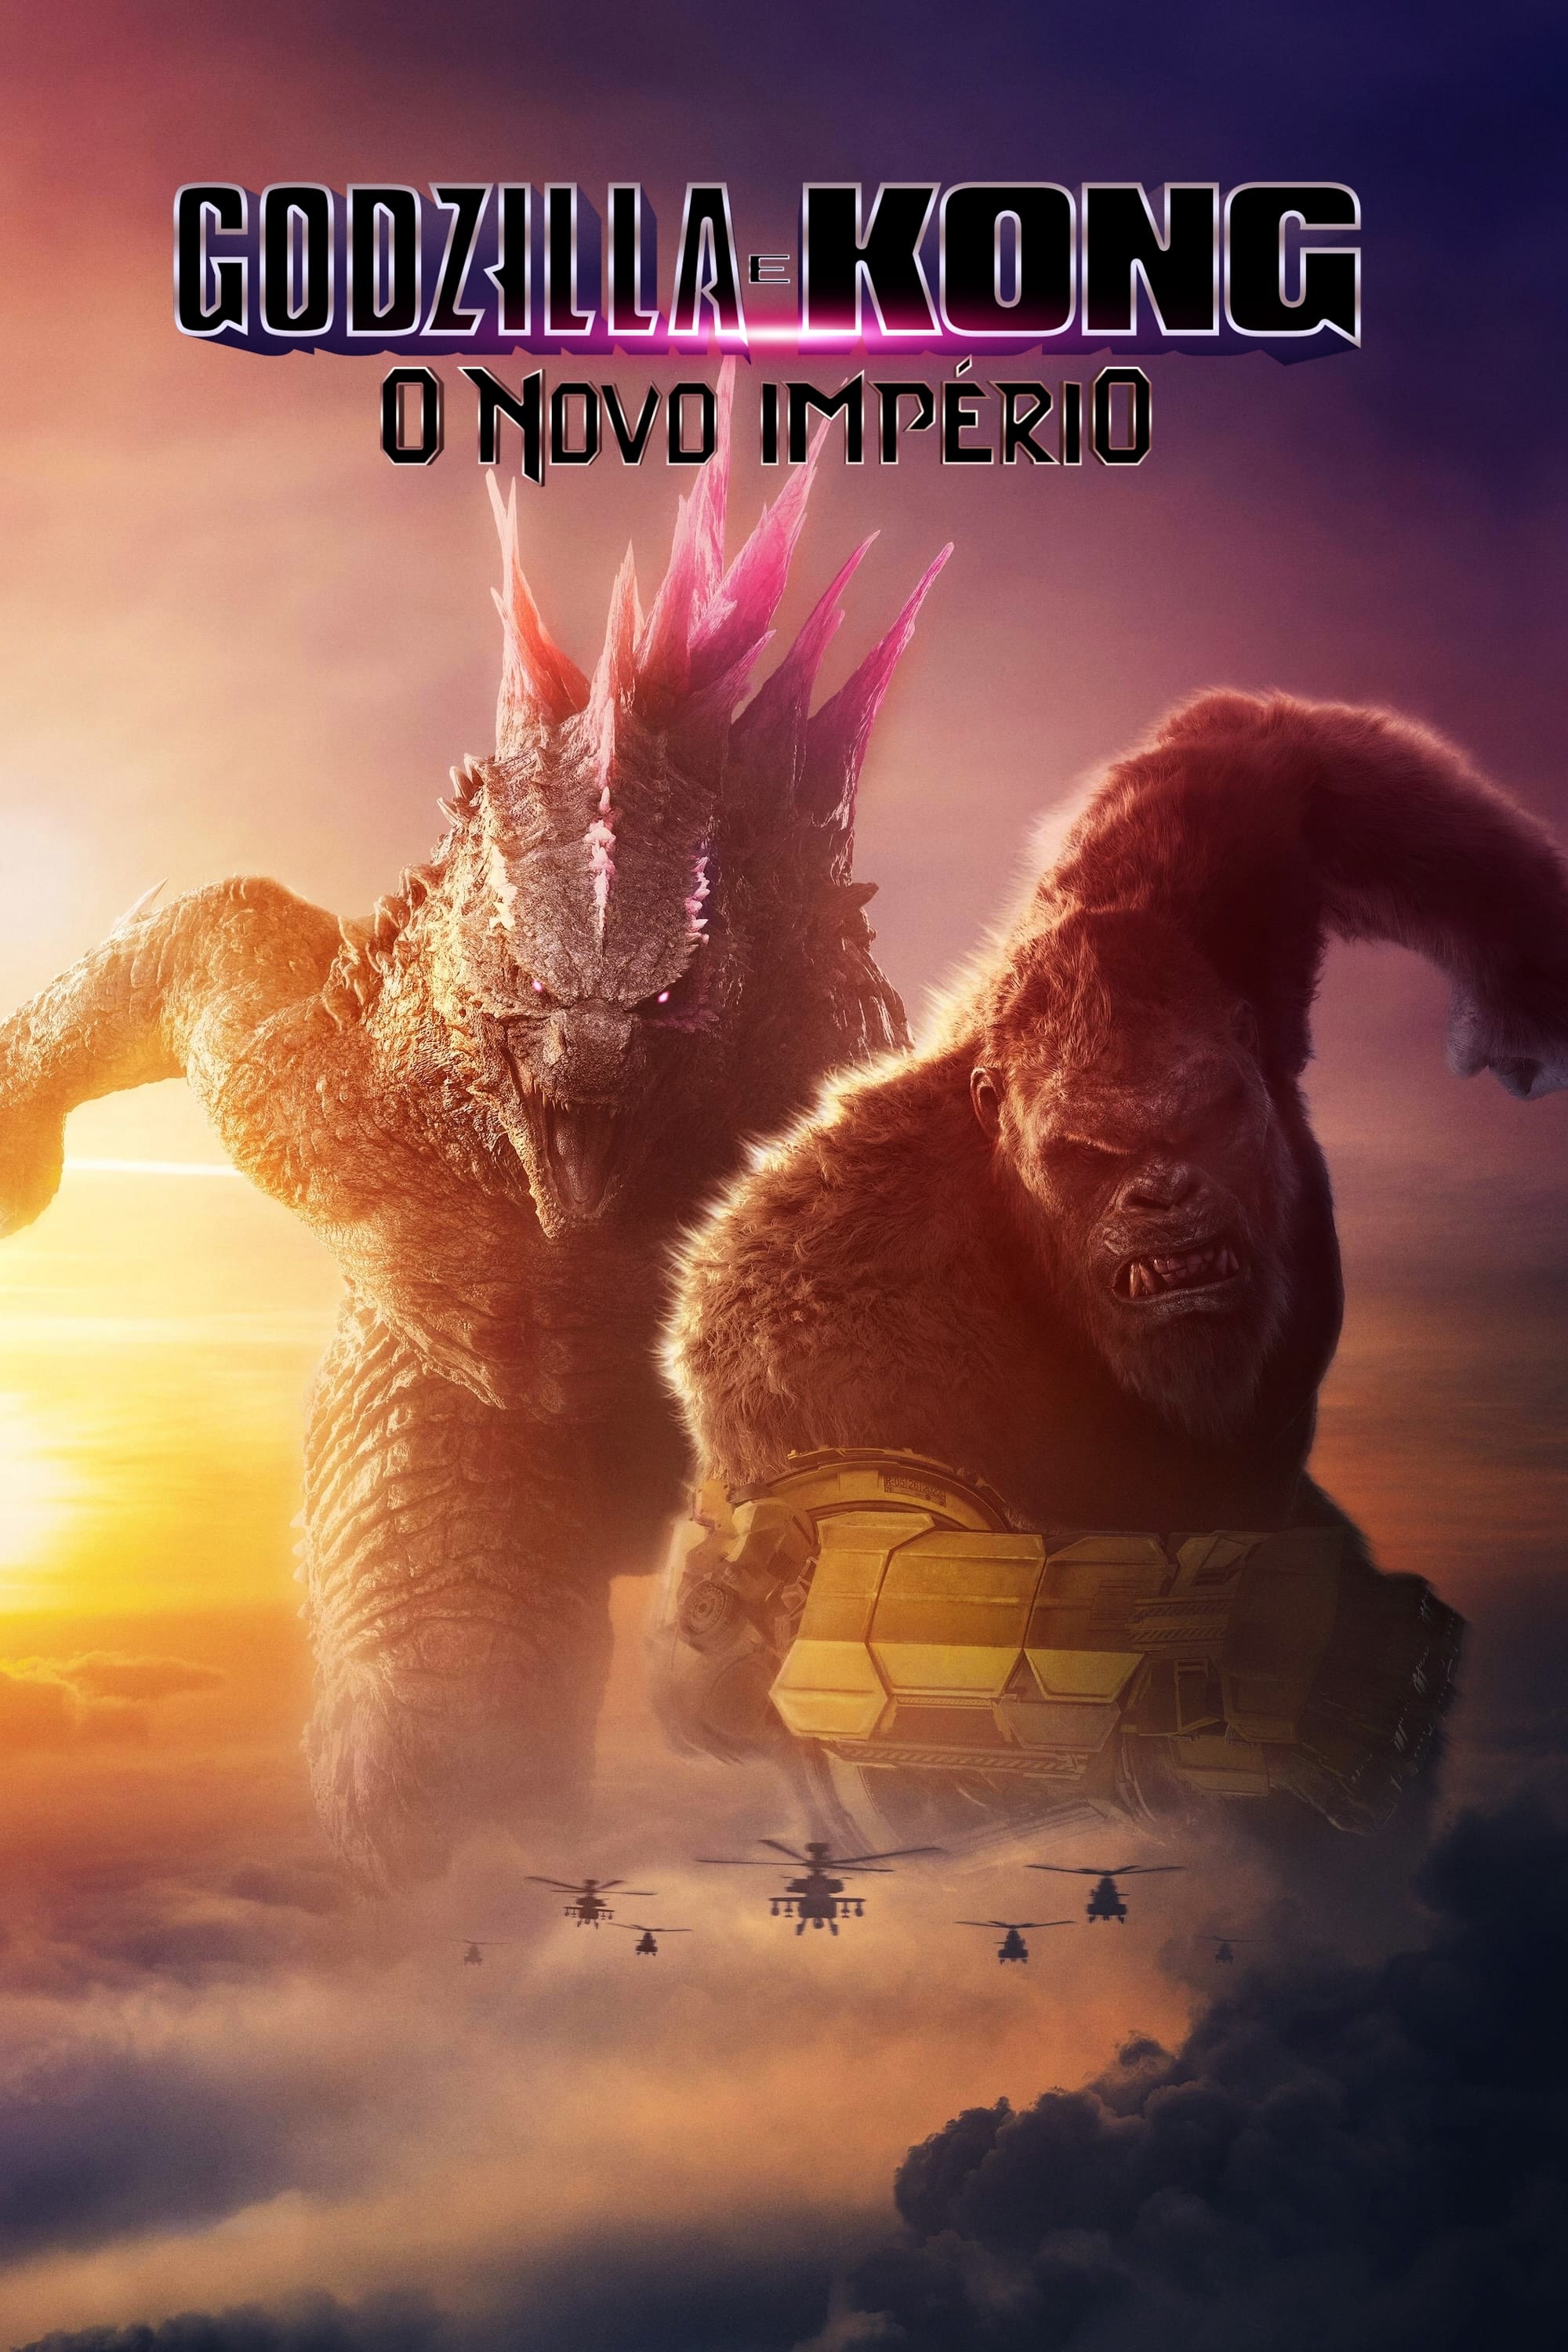 Imagem do Poster do filme ''